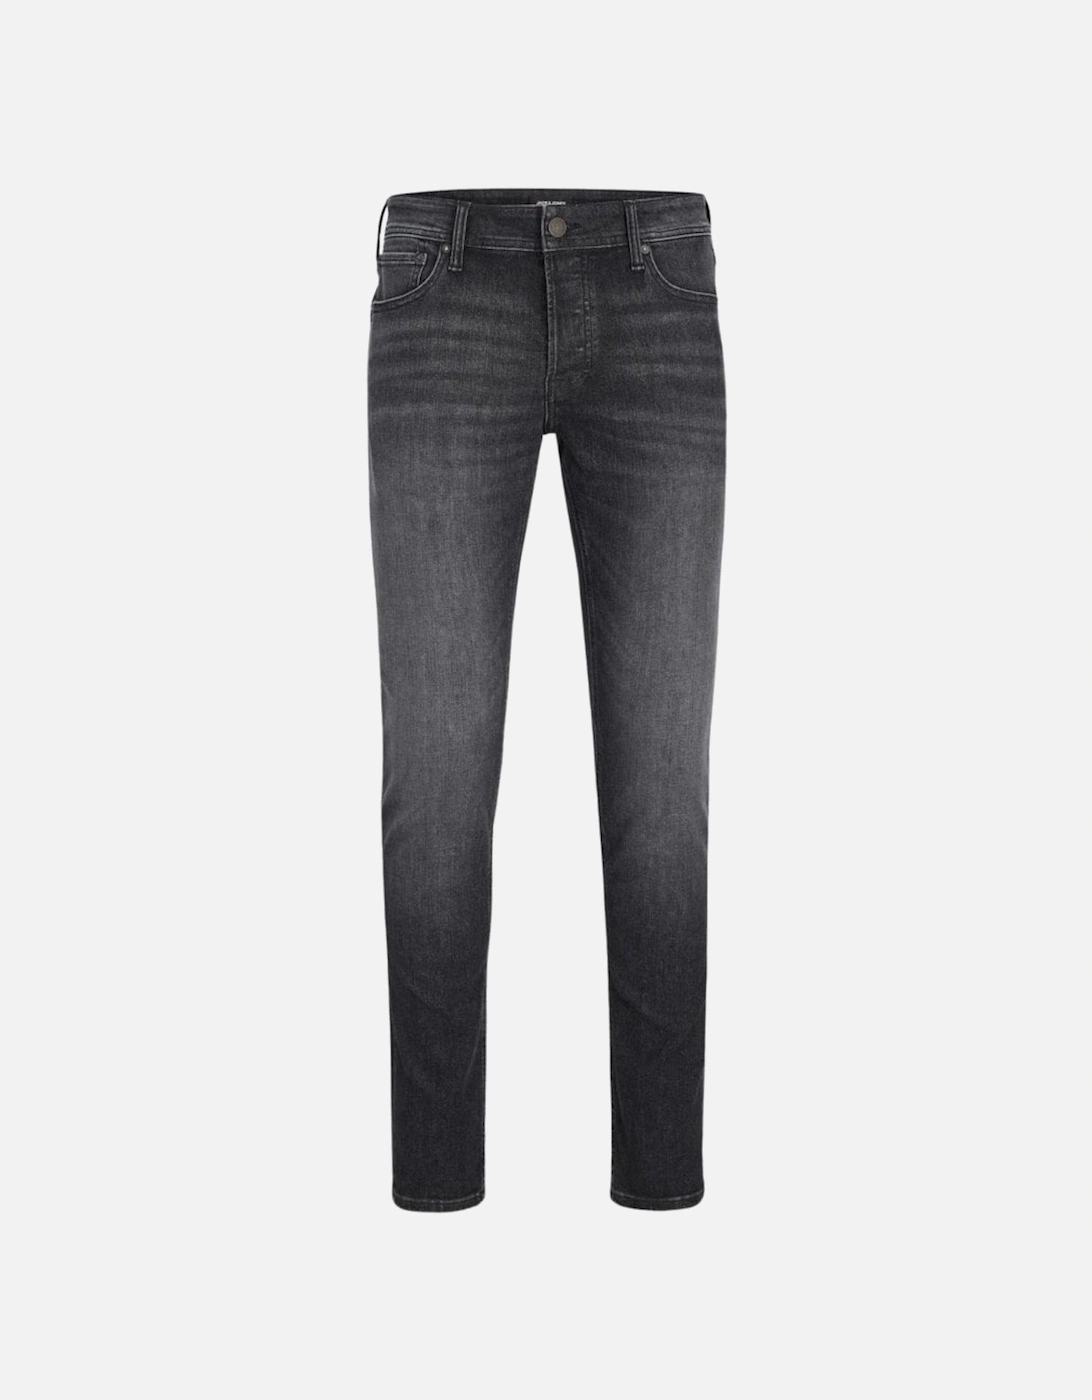 Glenn Original 270 Slim Fit Jeans - Washed Black, 9 of 8